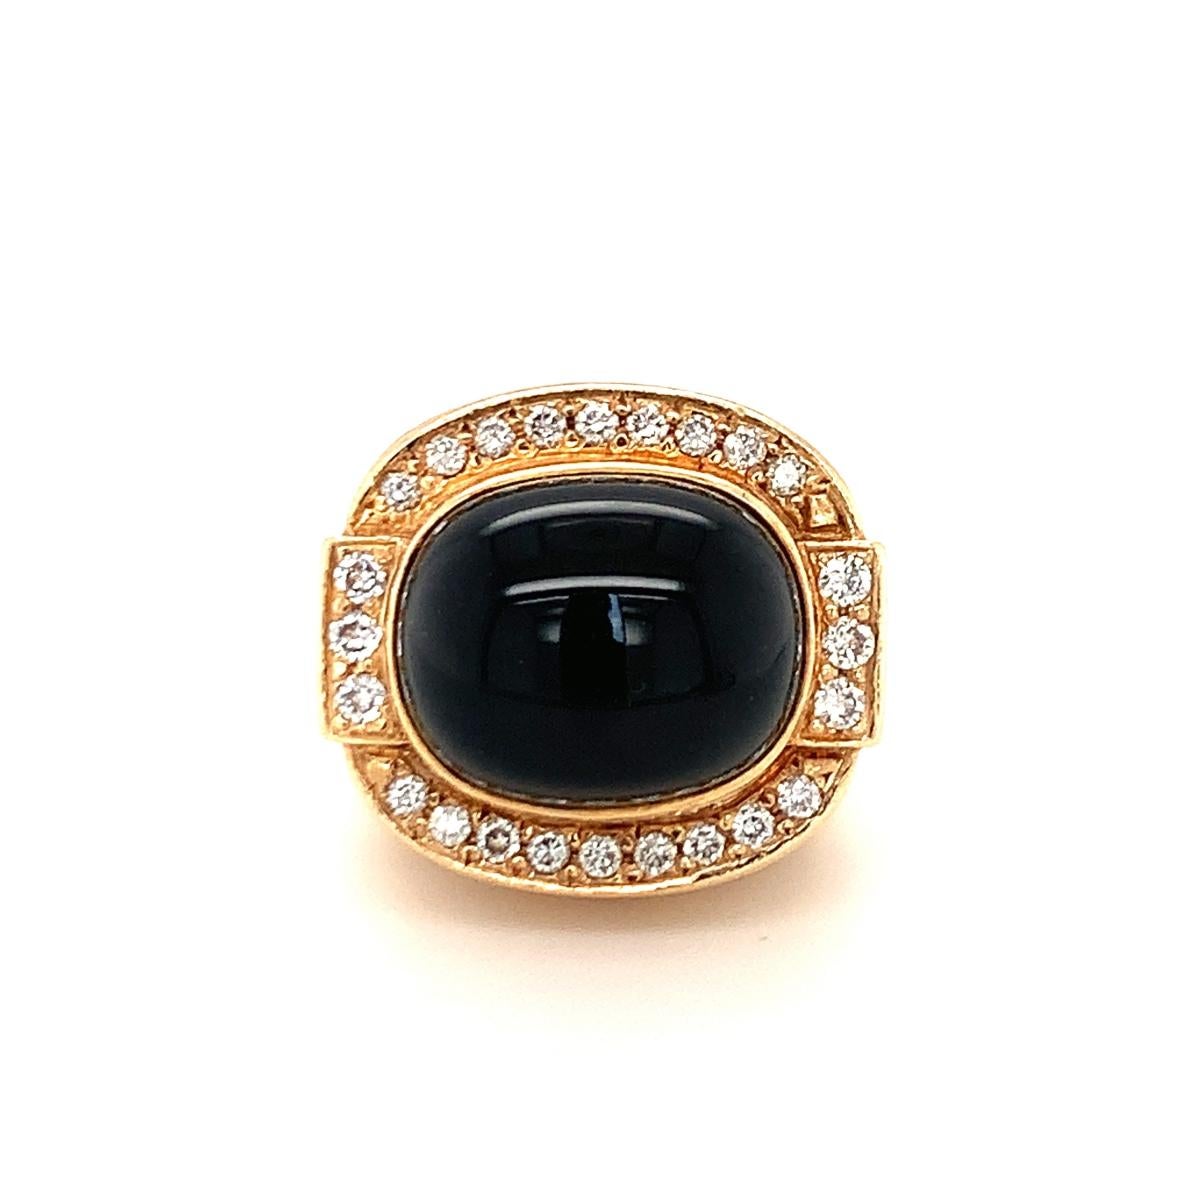 Ein schwarzer Onyx und Diamant Kuppel 14K Gelbgold Ring mit einem abgestuften / erhöhten Design zentriert eine ovale Cabochon Onyx umgeben von 24 runden Diamanten im Brillantschliff von insgesamt 0,70 ct. Ca. 1970er Jahre.

Grandios, tiefgründig,